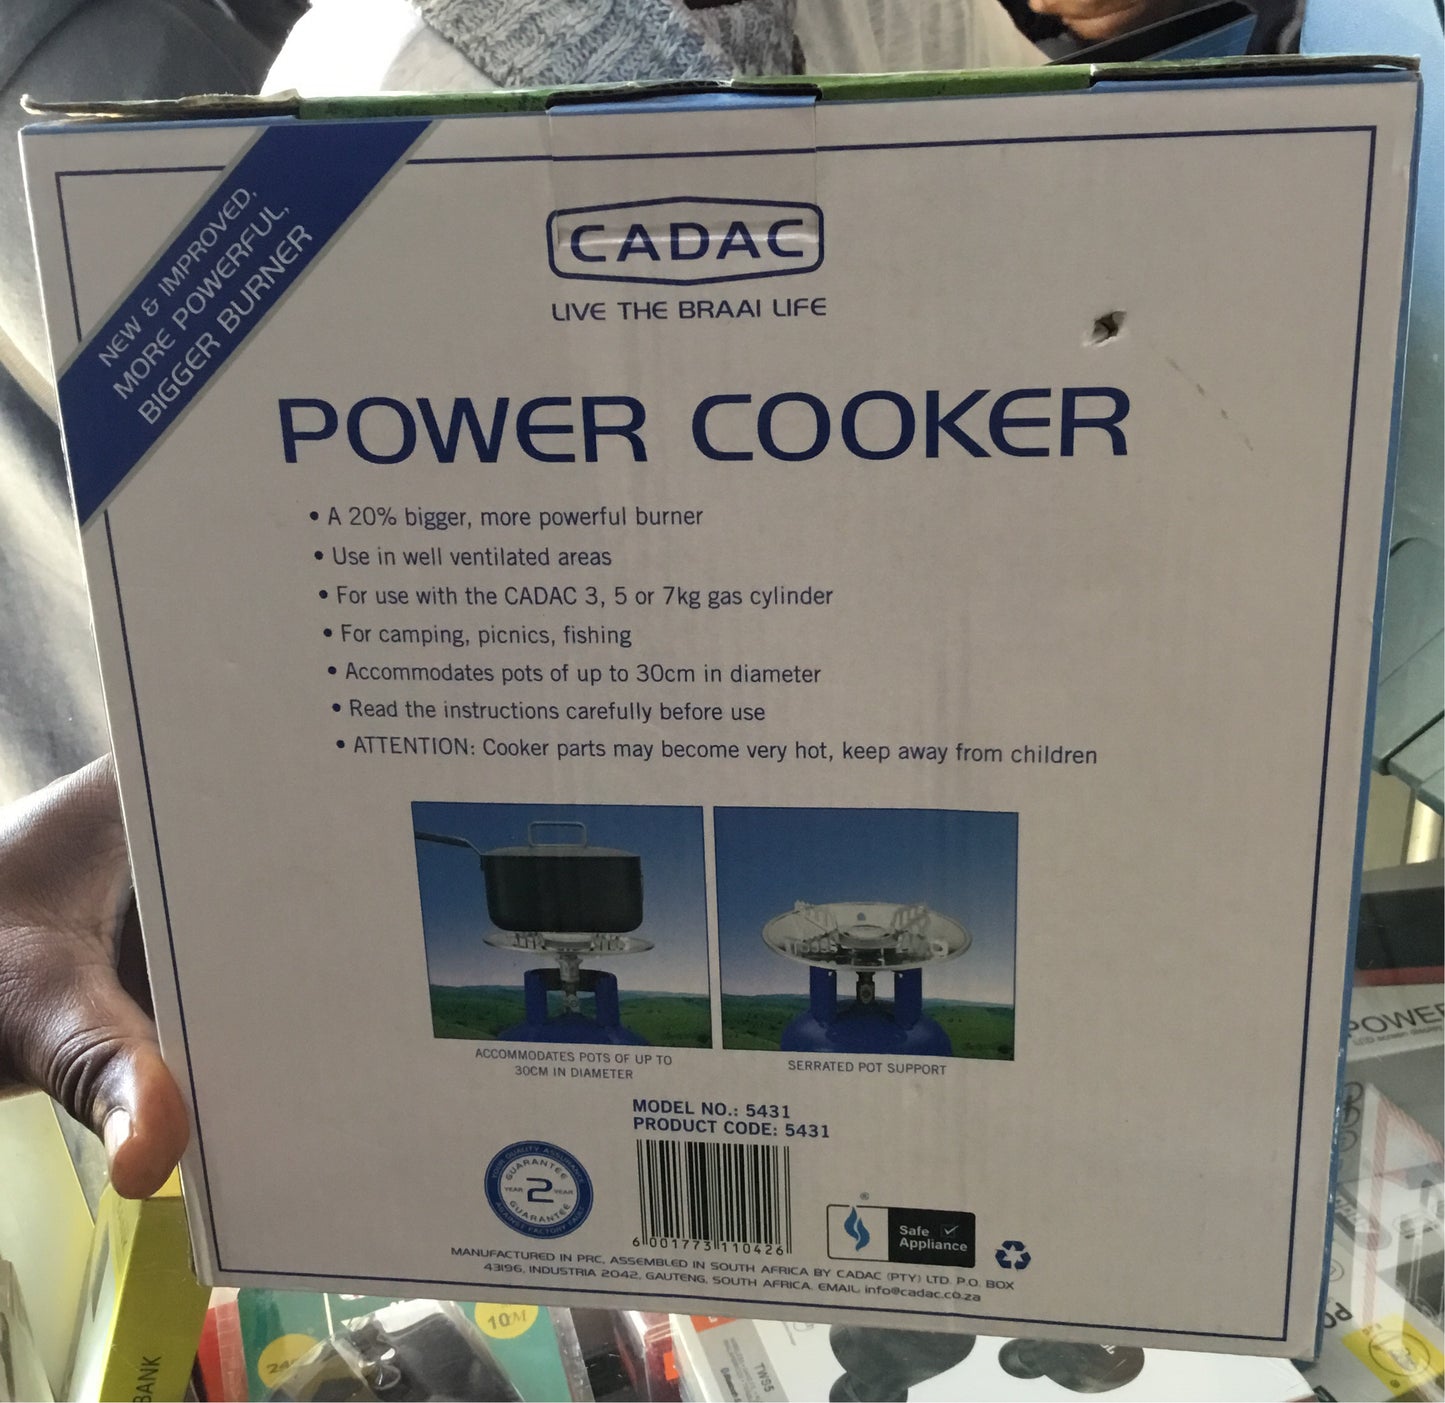 CODAC Power Cooker Top